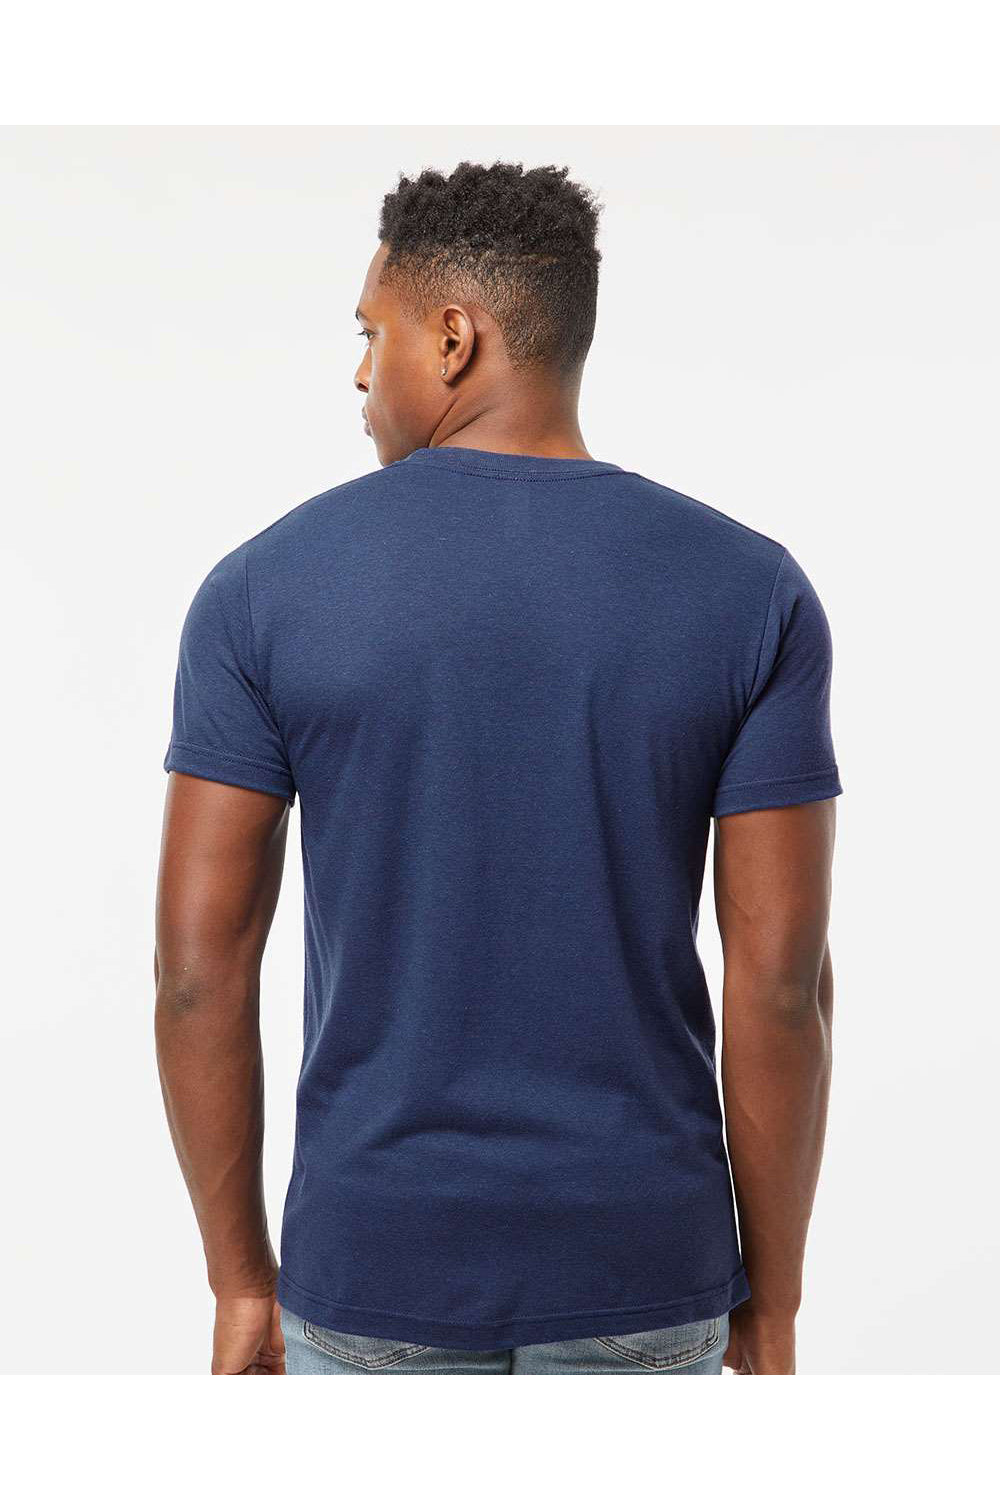 Tultex 254 Mens Short Sleeve Crewneck T-Shirt Midnight Navy Blue Model Back